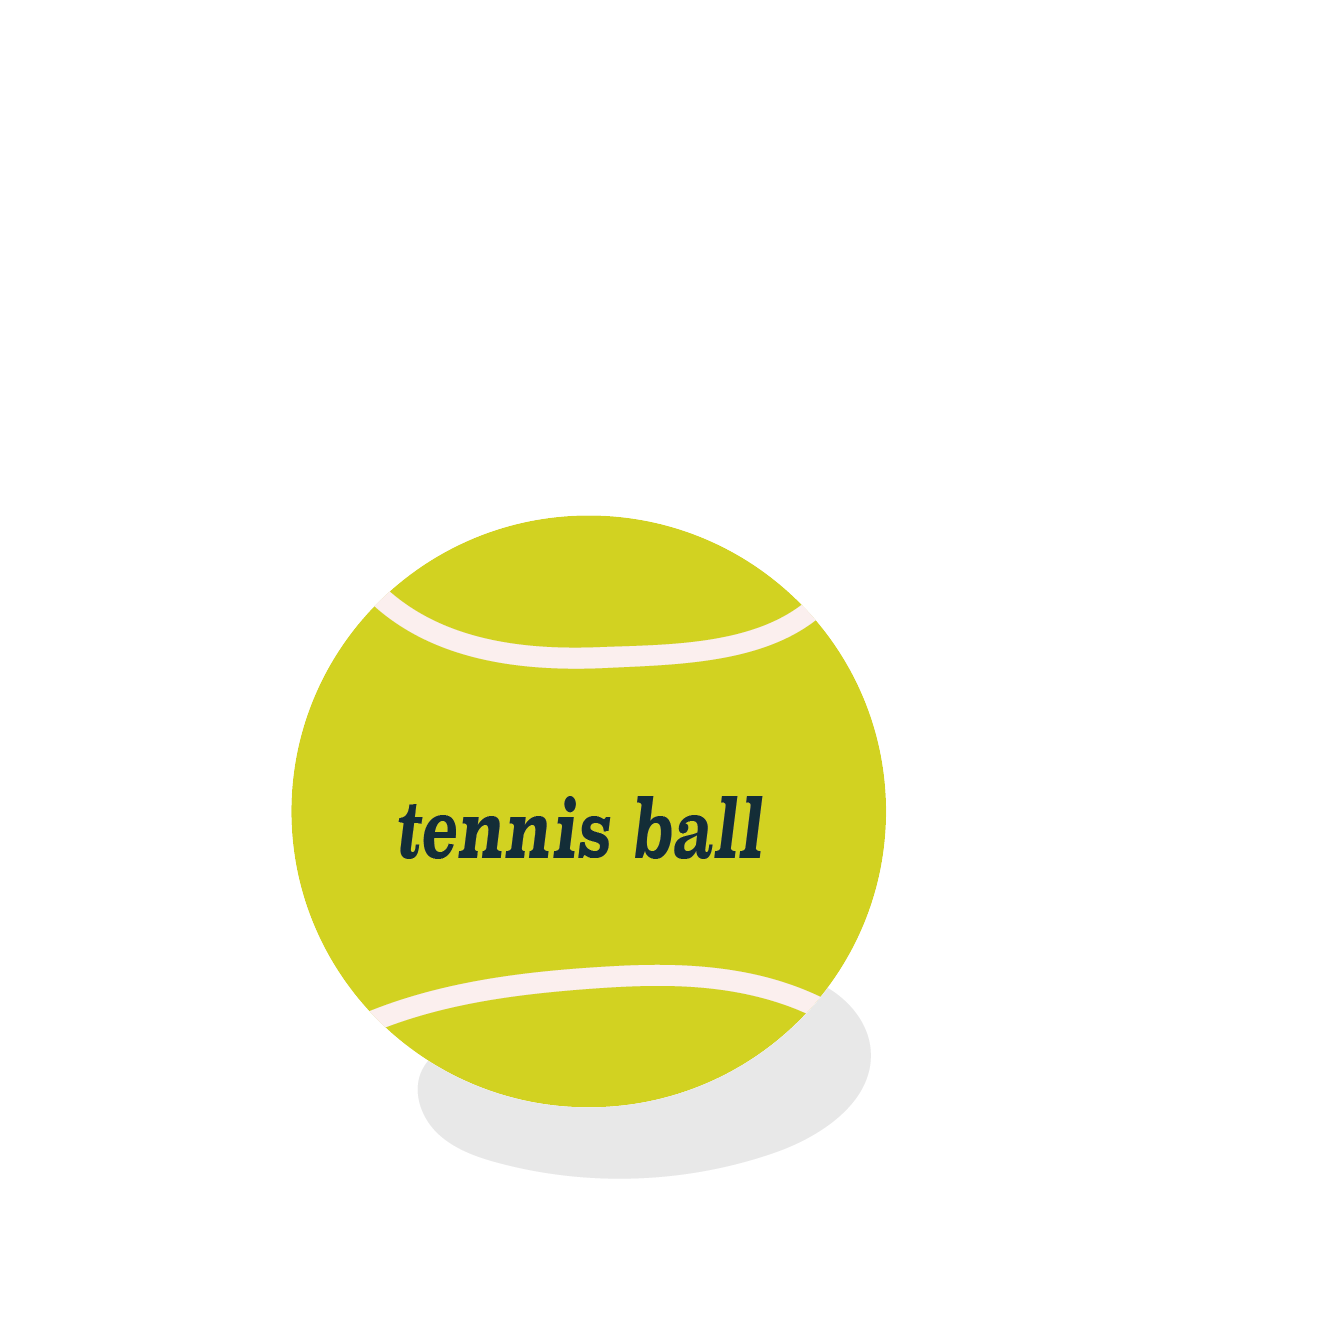 テニスの硬式ボール 無料 イラスト スポーツ 商用フリー 無料 の